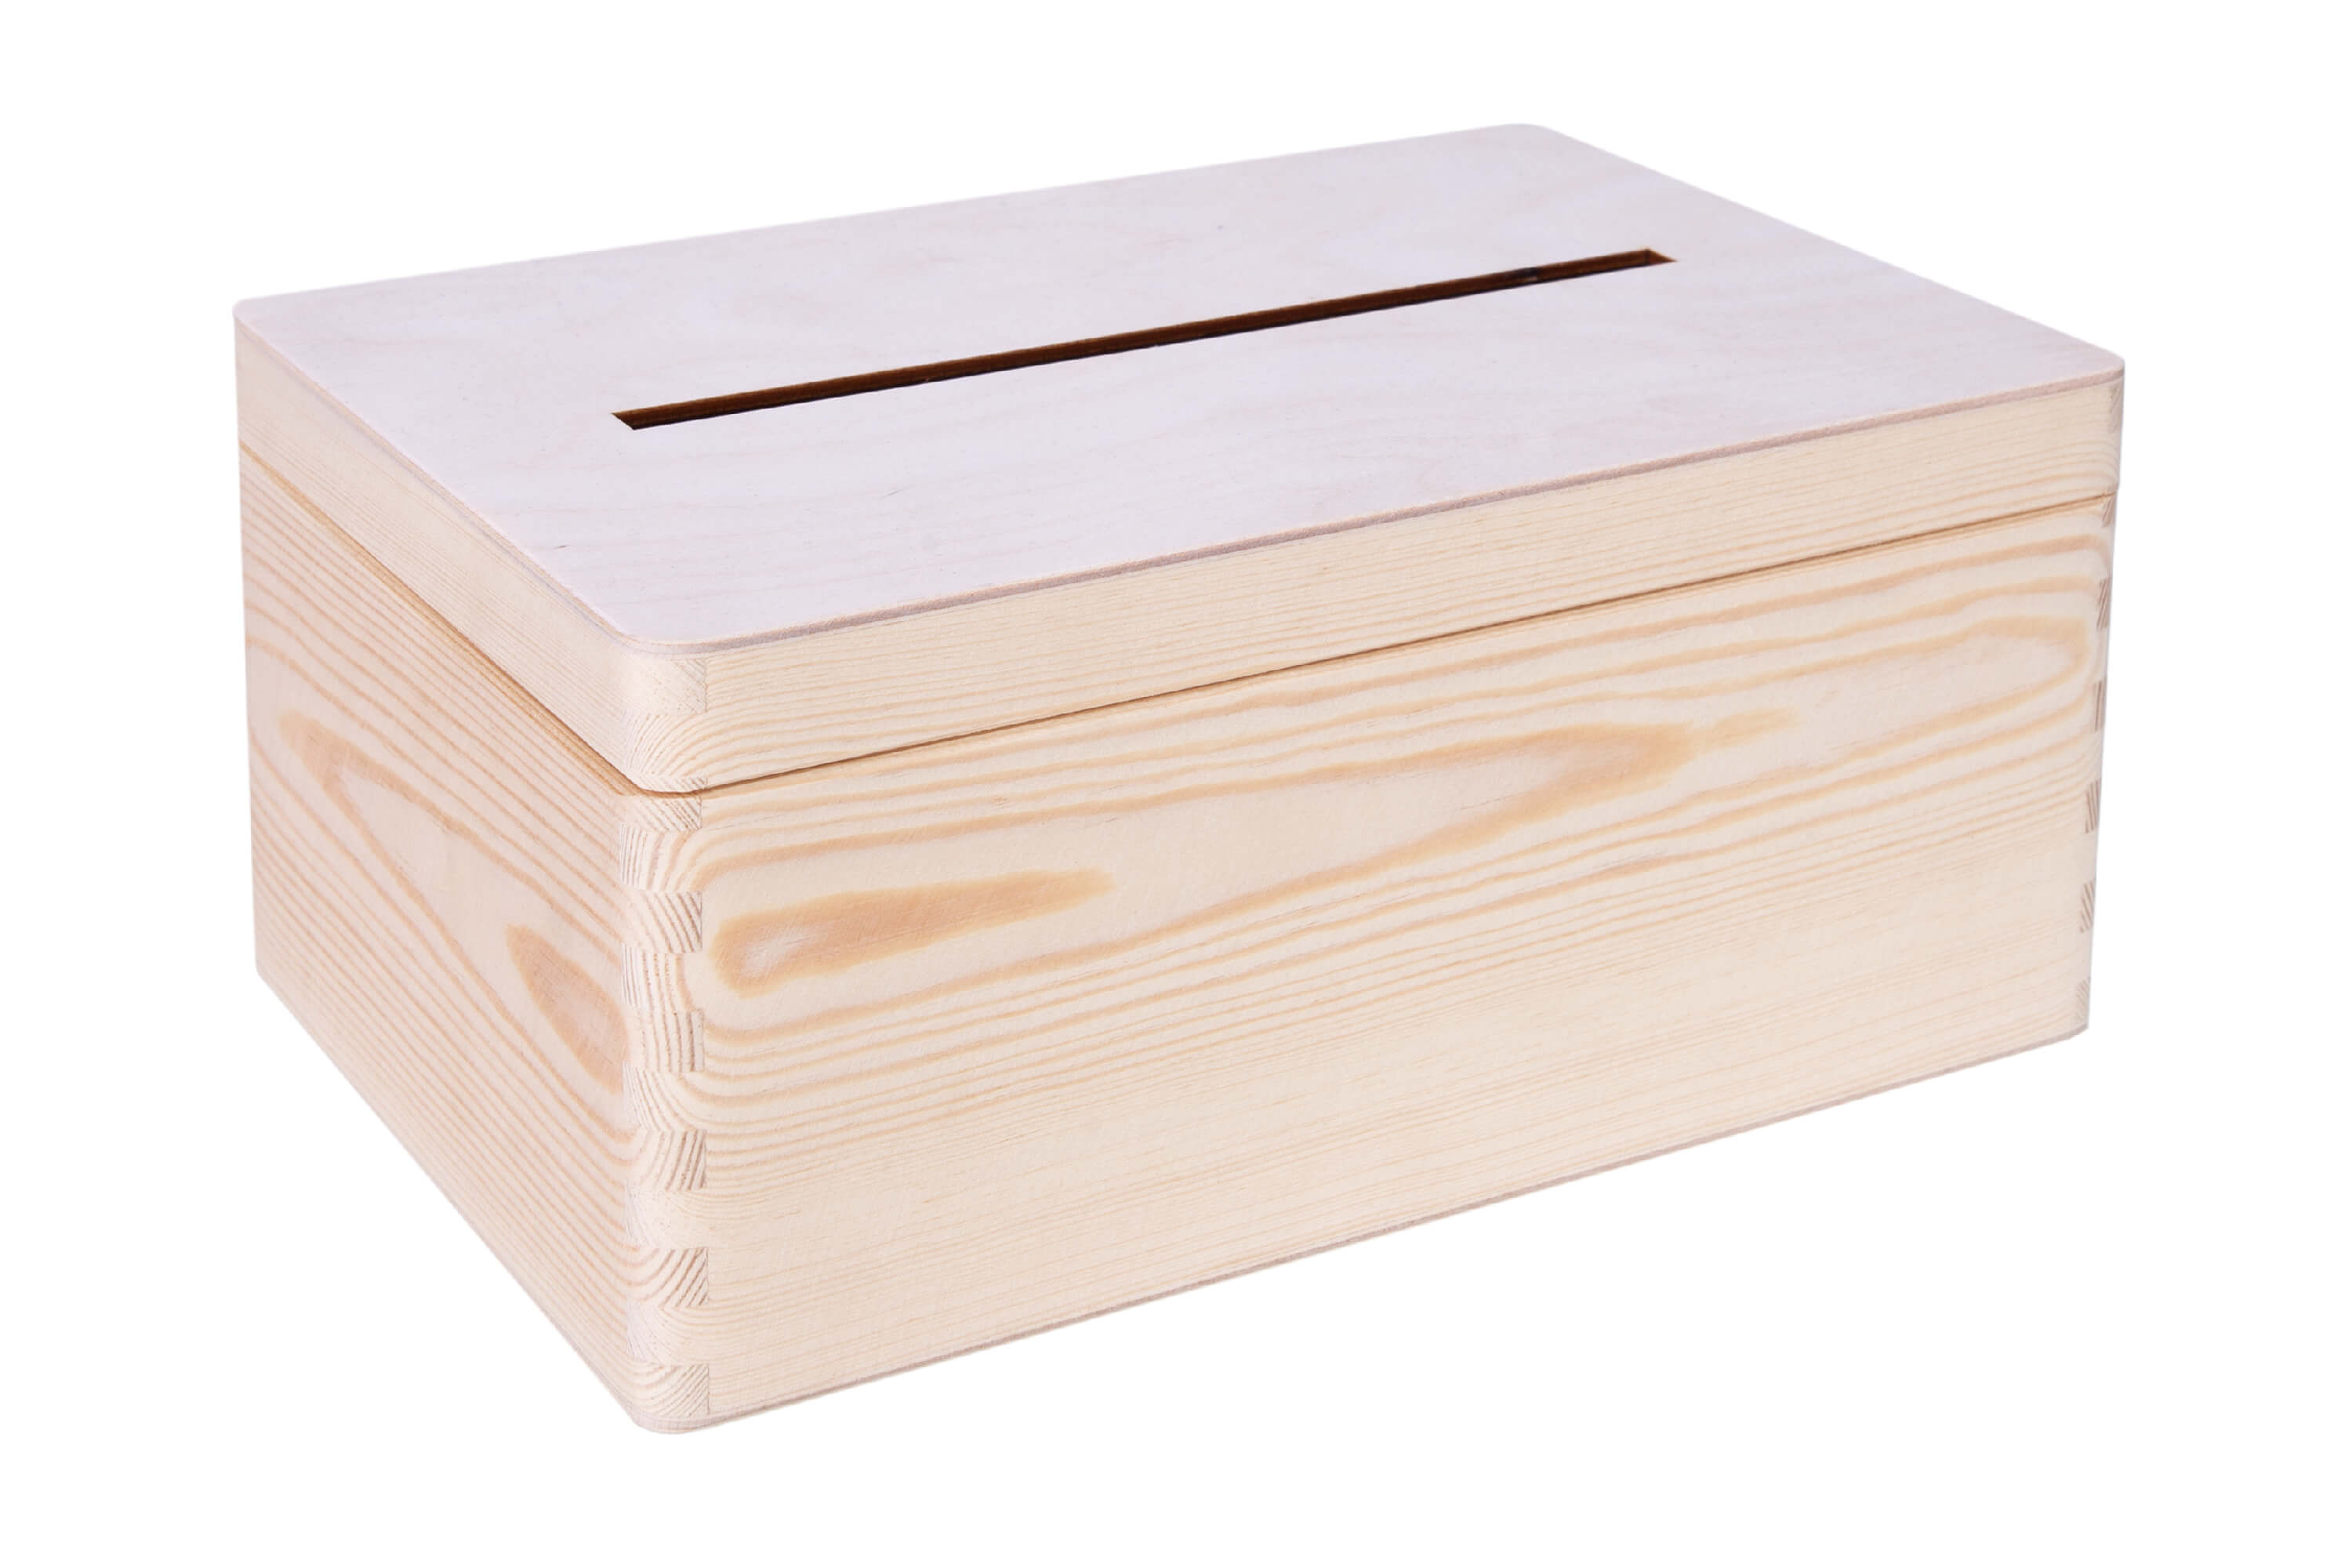 Skrzynka drewniana na koperty, karty ślubne 30x20x13,5cm PU0087